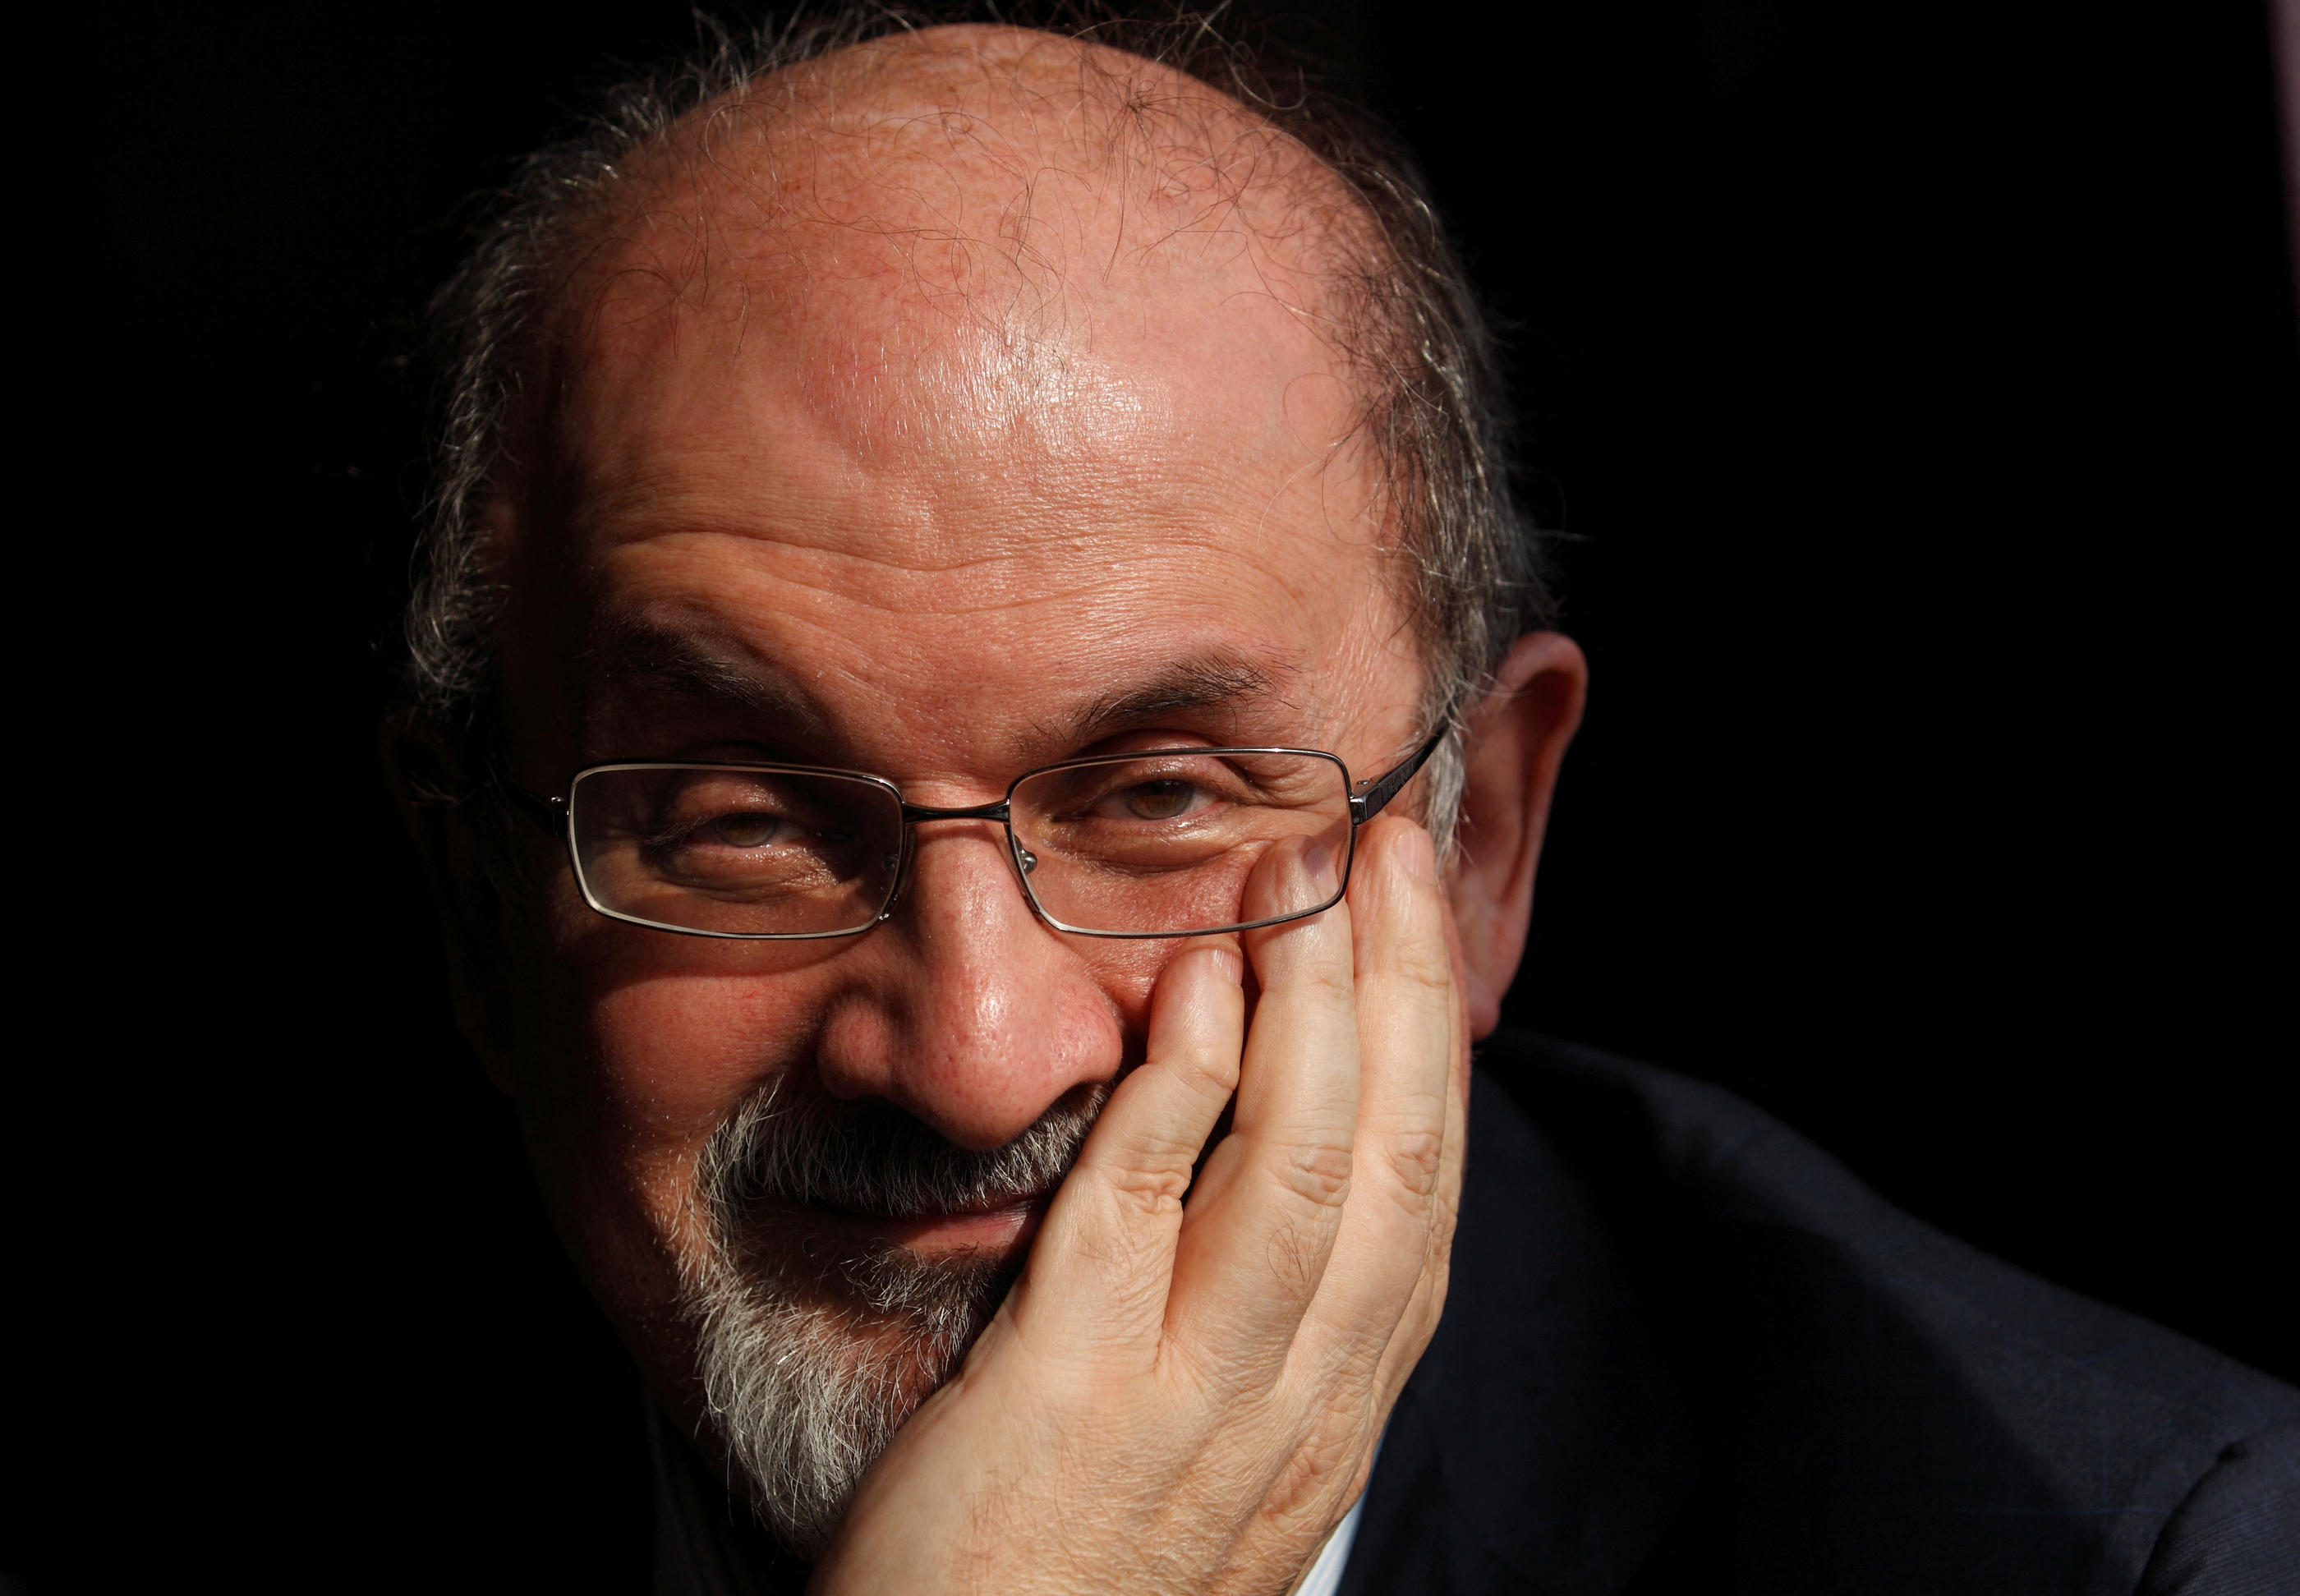 Le monde littéraire et la classe politique dans son ensemble ont fermement condamné l’attaque dont a été victime l’écrivain britannique Salman Rushdie. REUTERS/Andrew Winning